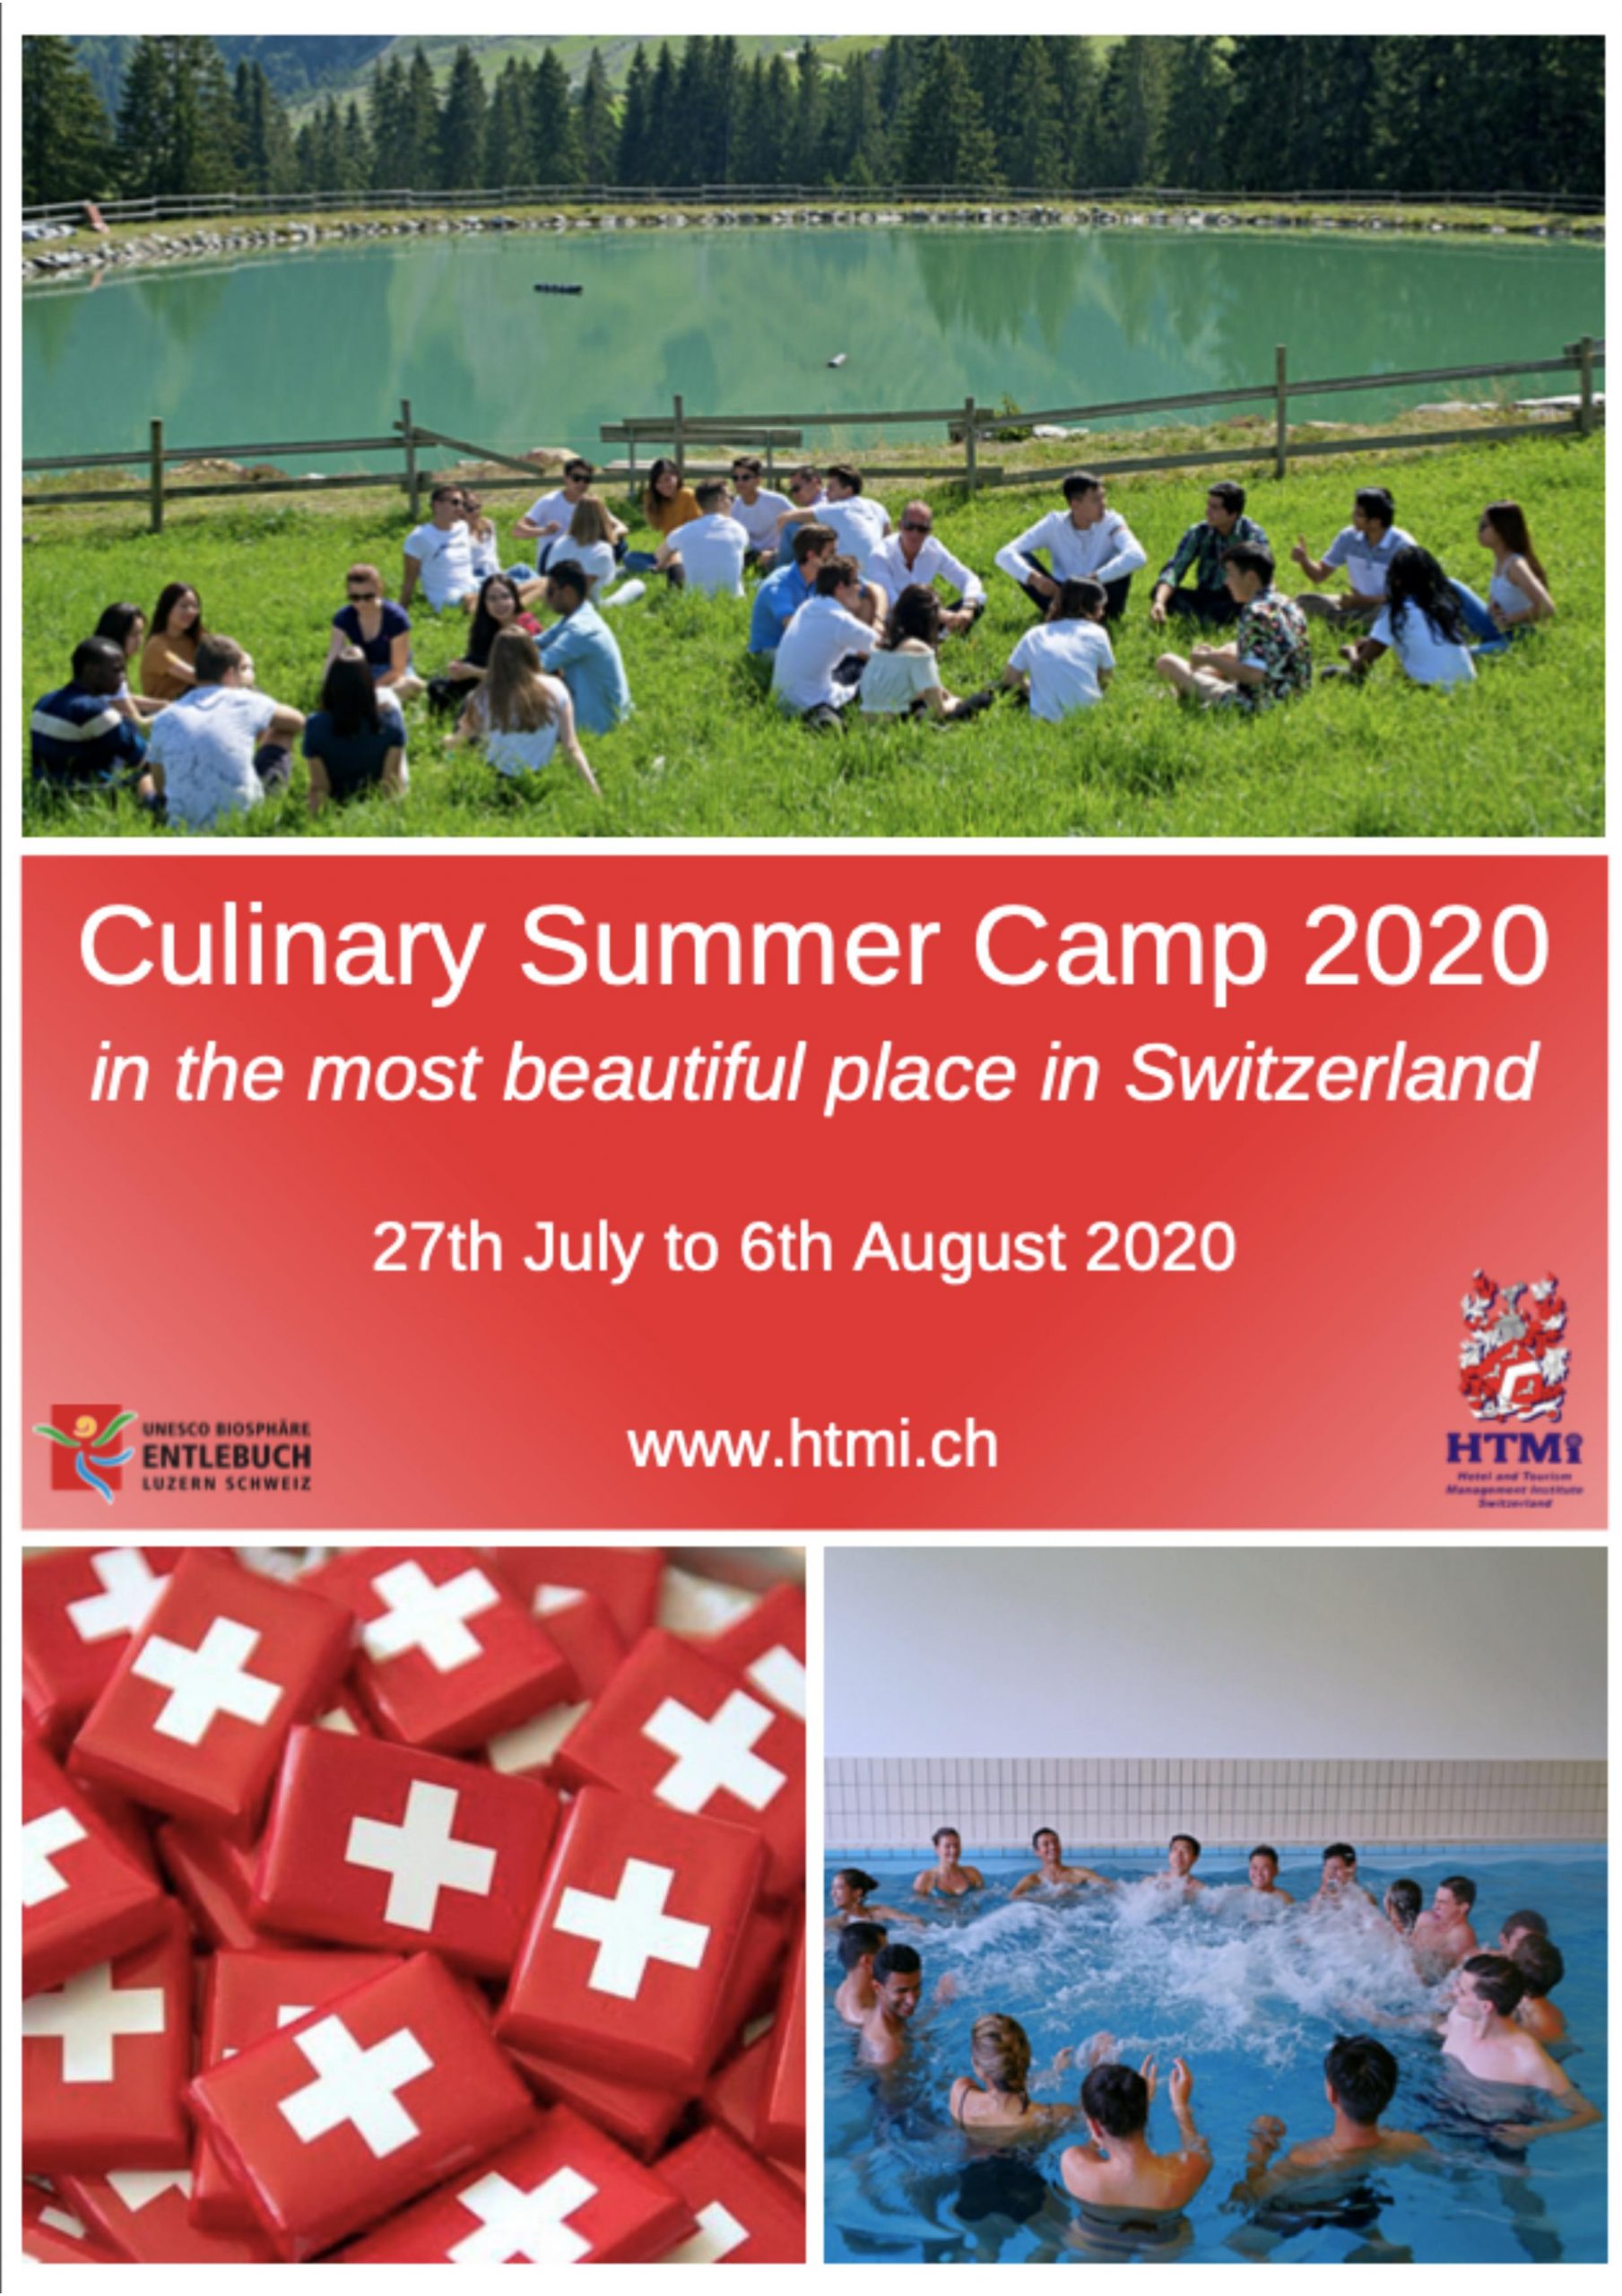 Trại hè nấu ăn tại 1 trong những nơi đẹp nhất Thụy Sỹ